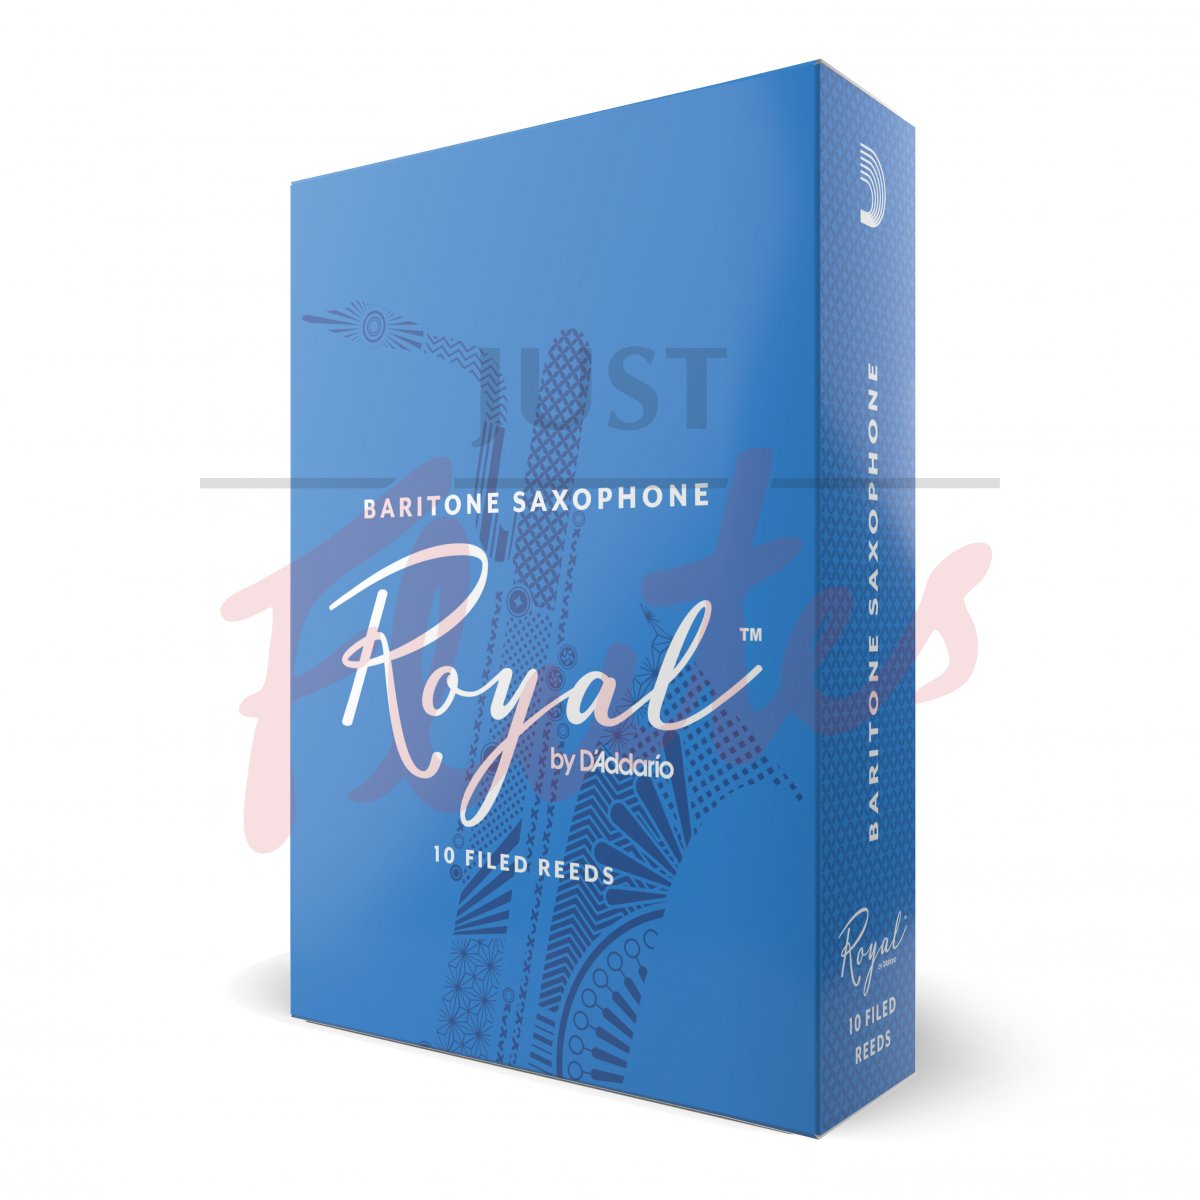 Royal by D'Addario RLB1030 Baritone Saxophone 3 Reeds, 10-pack